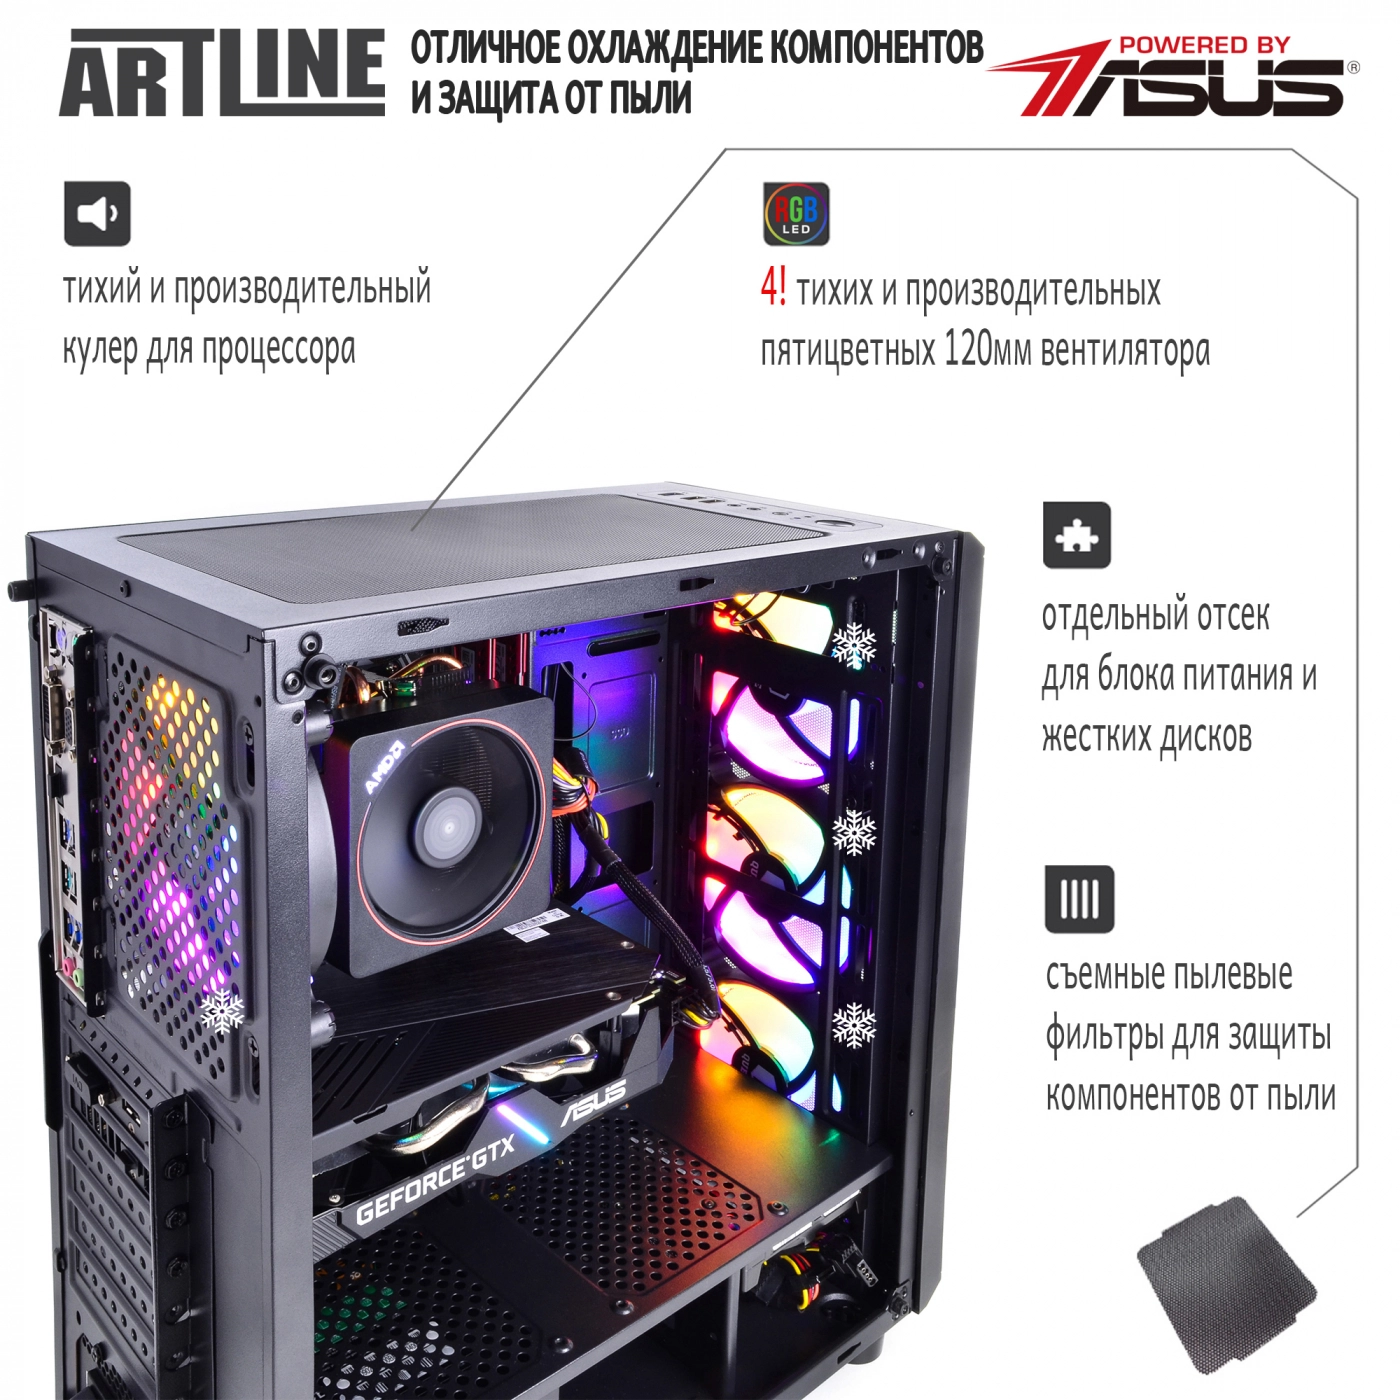 Купить Компьютер ARTLINE Gaming X43v14 - фото 2